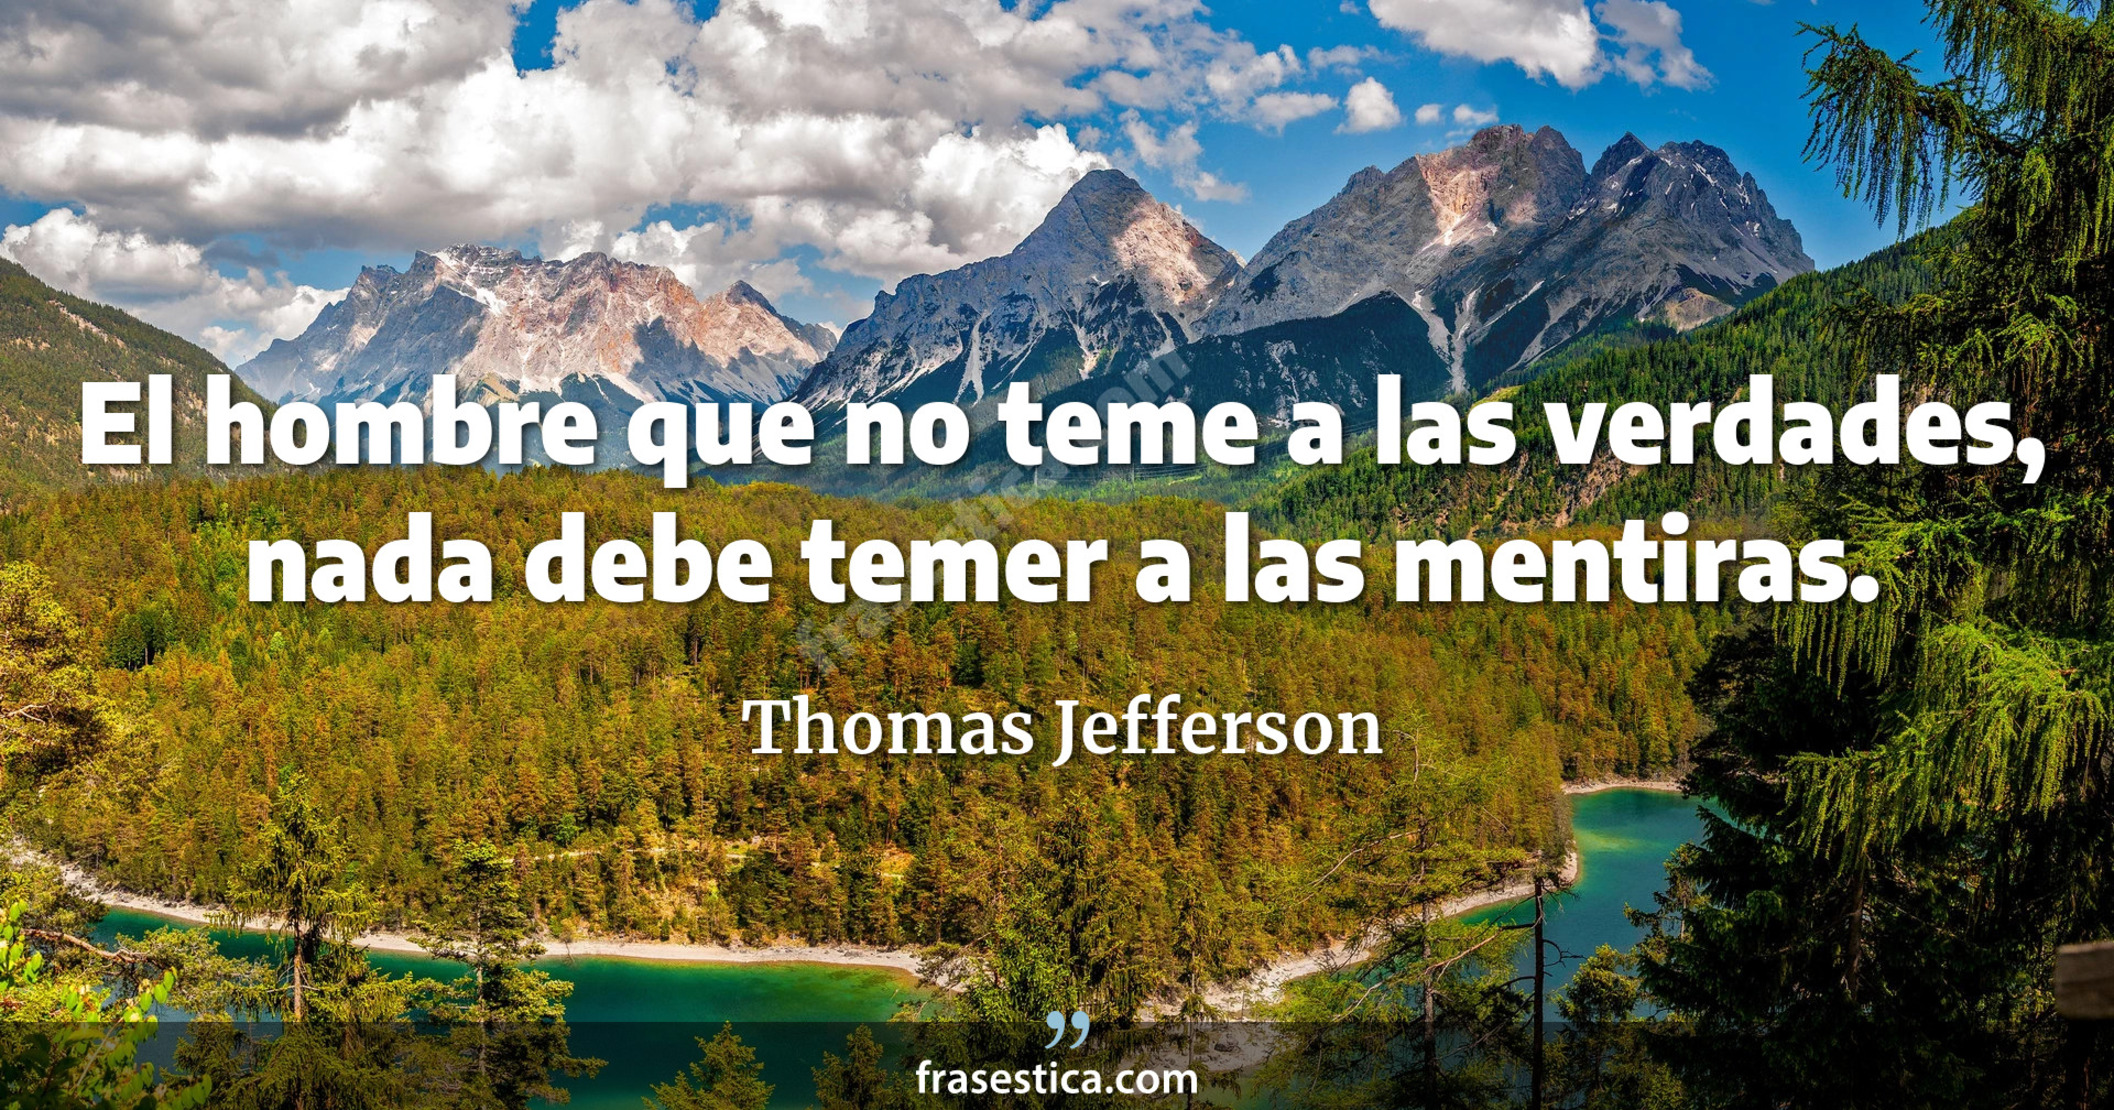 El hombre que no teme a las verdades, nada debe temer a las mentiras. - Thomas Jefferson